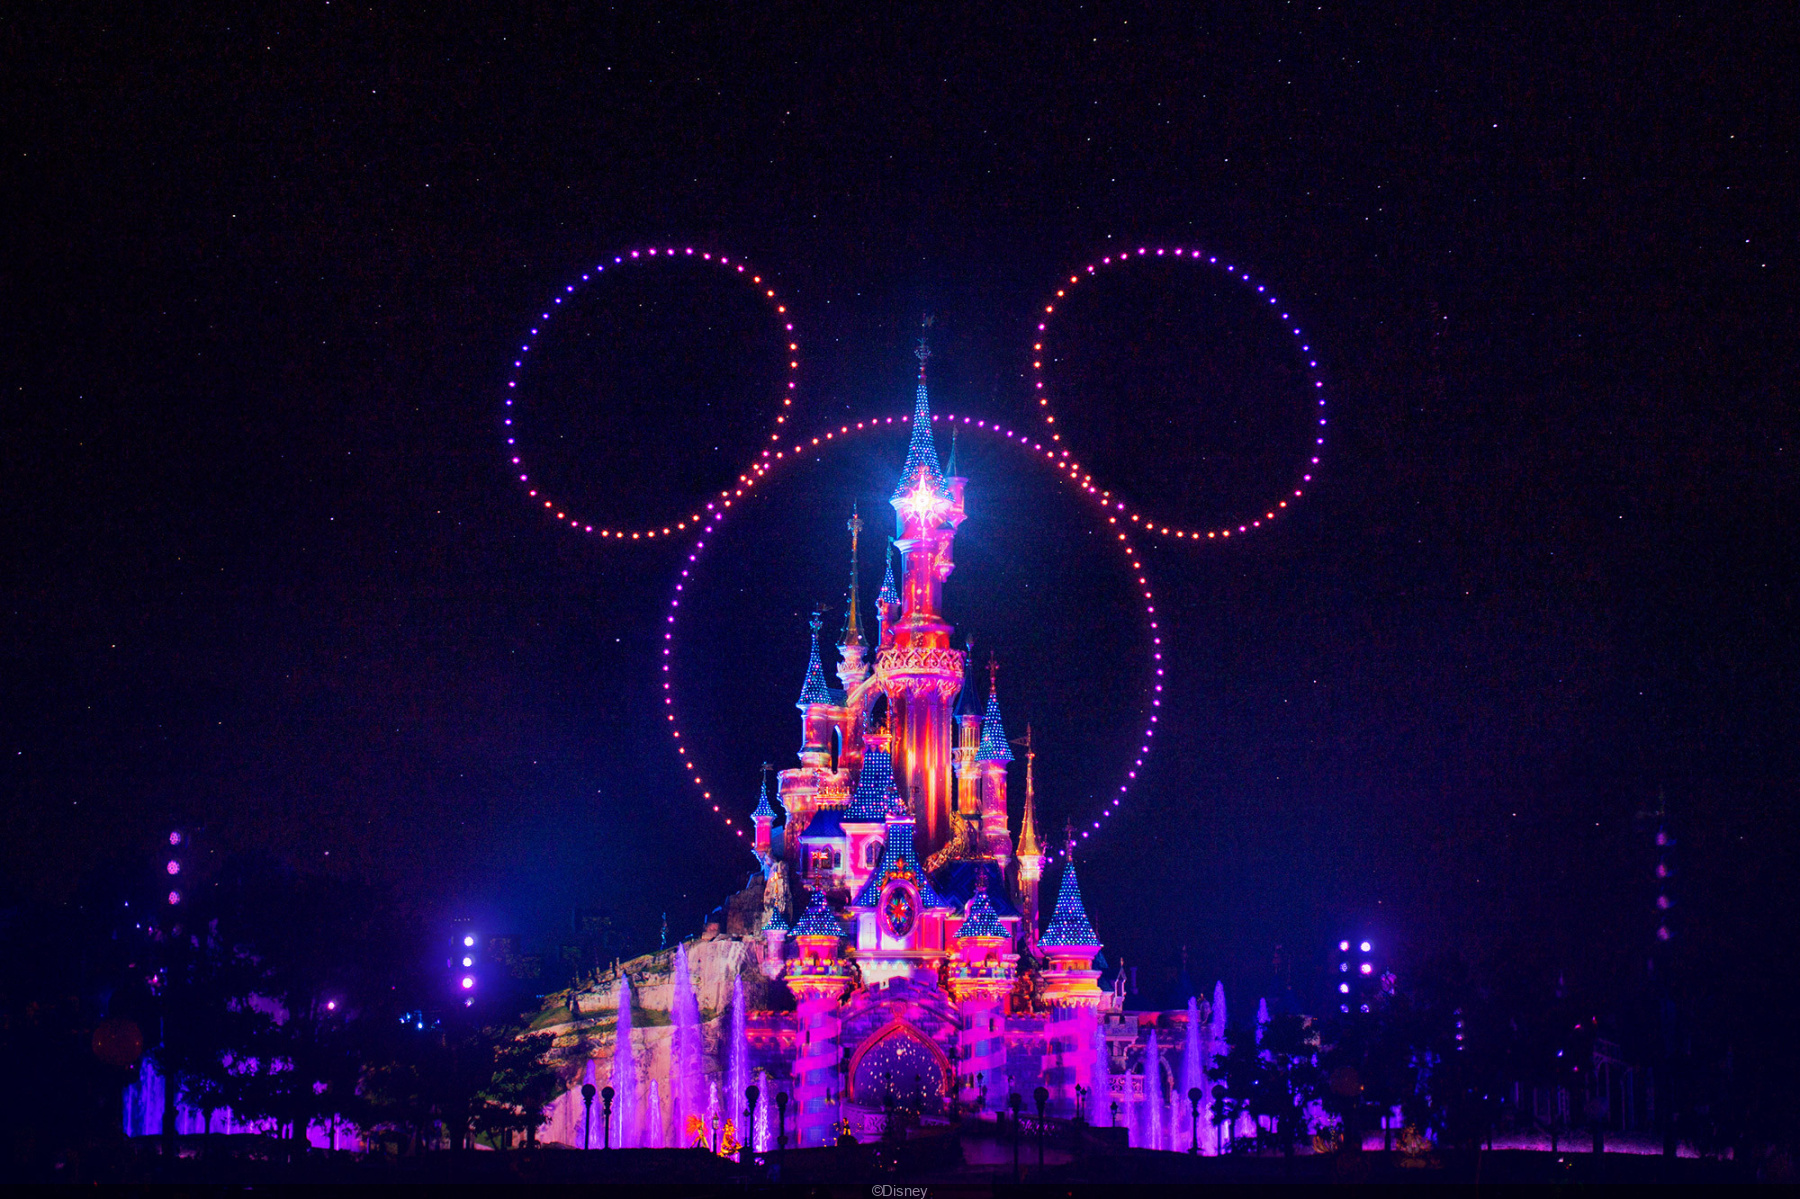 Le château Disneyland Paris by night